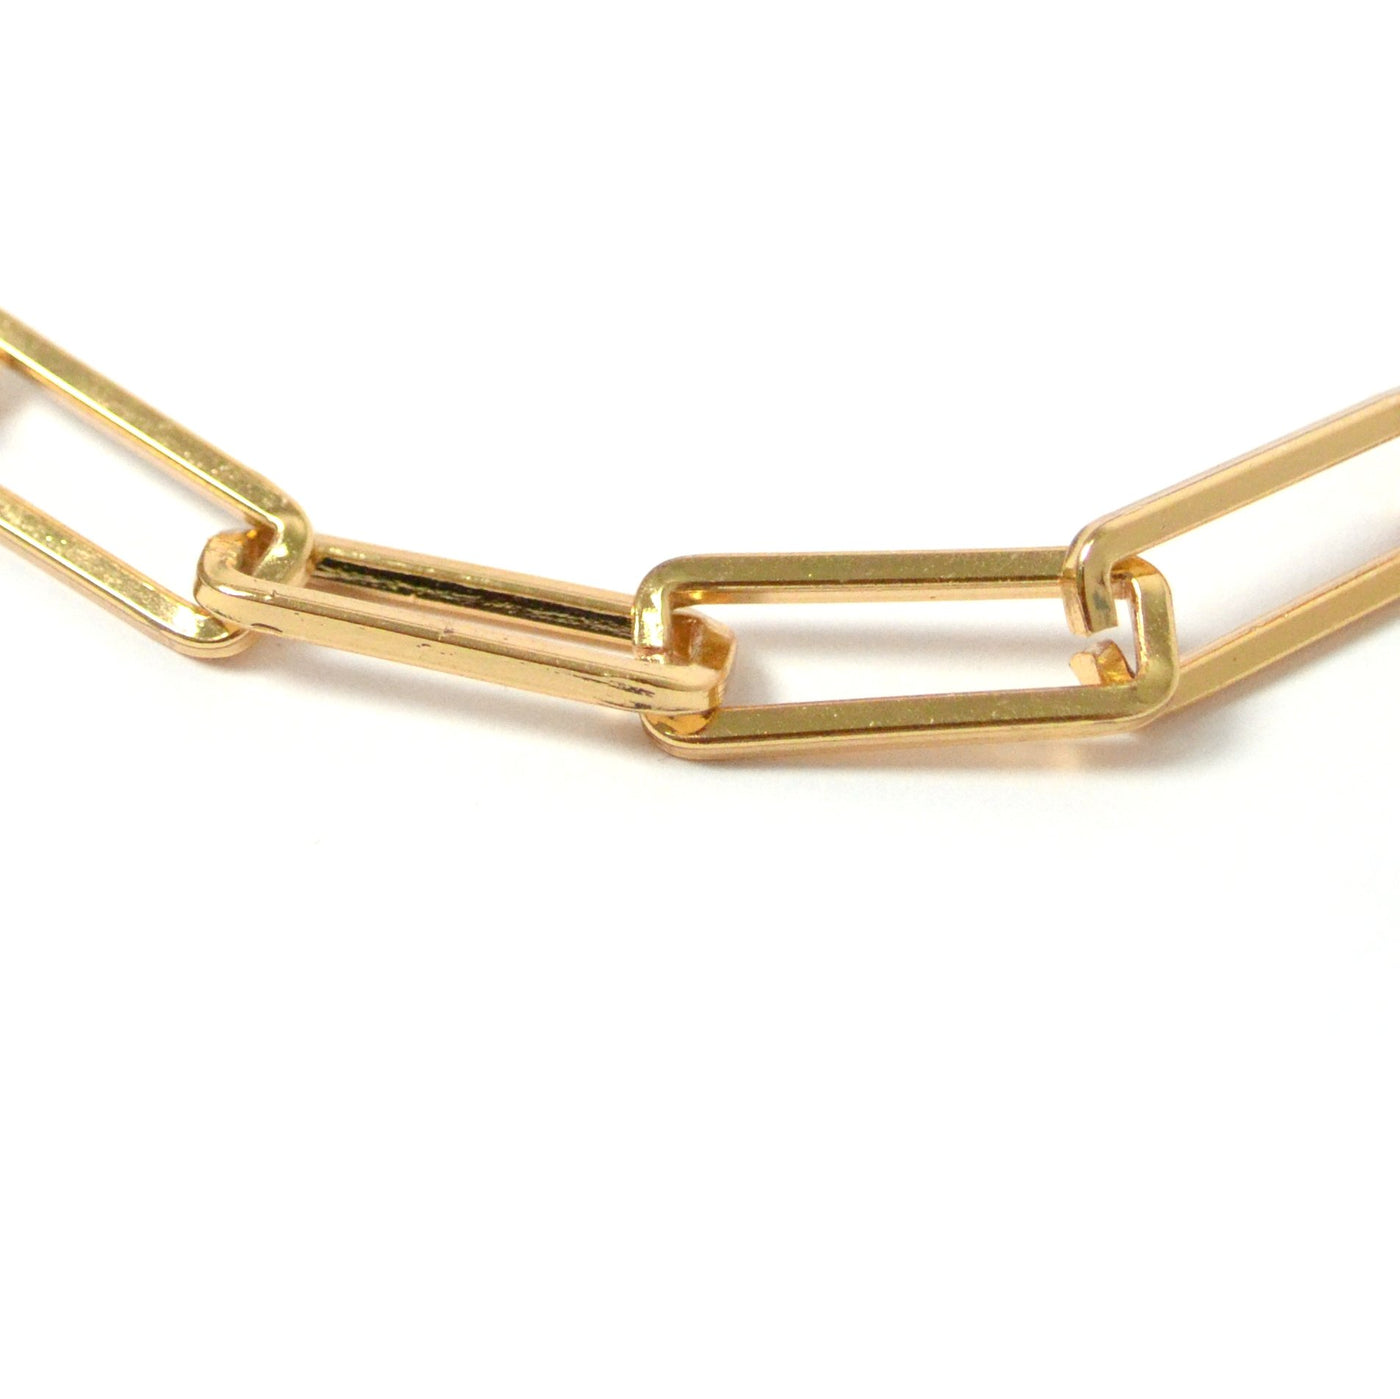 Collar Isabel de eslabones rectangulares con chapa de oro de 18K - AMATINA Joyería